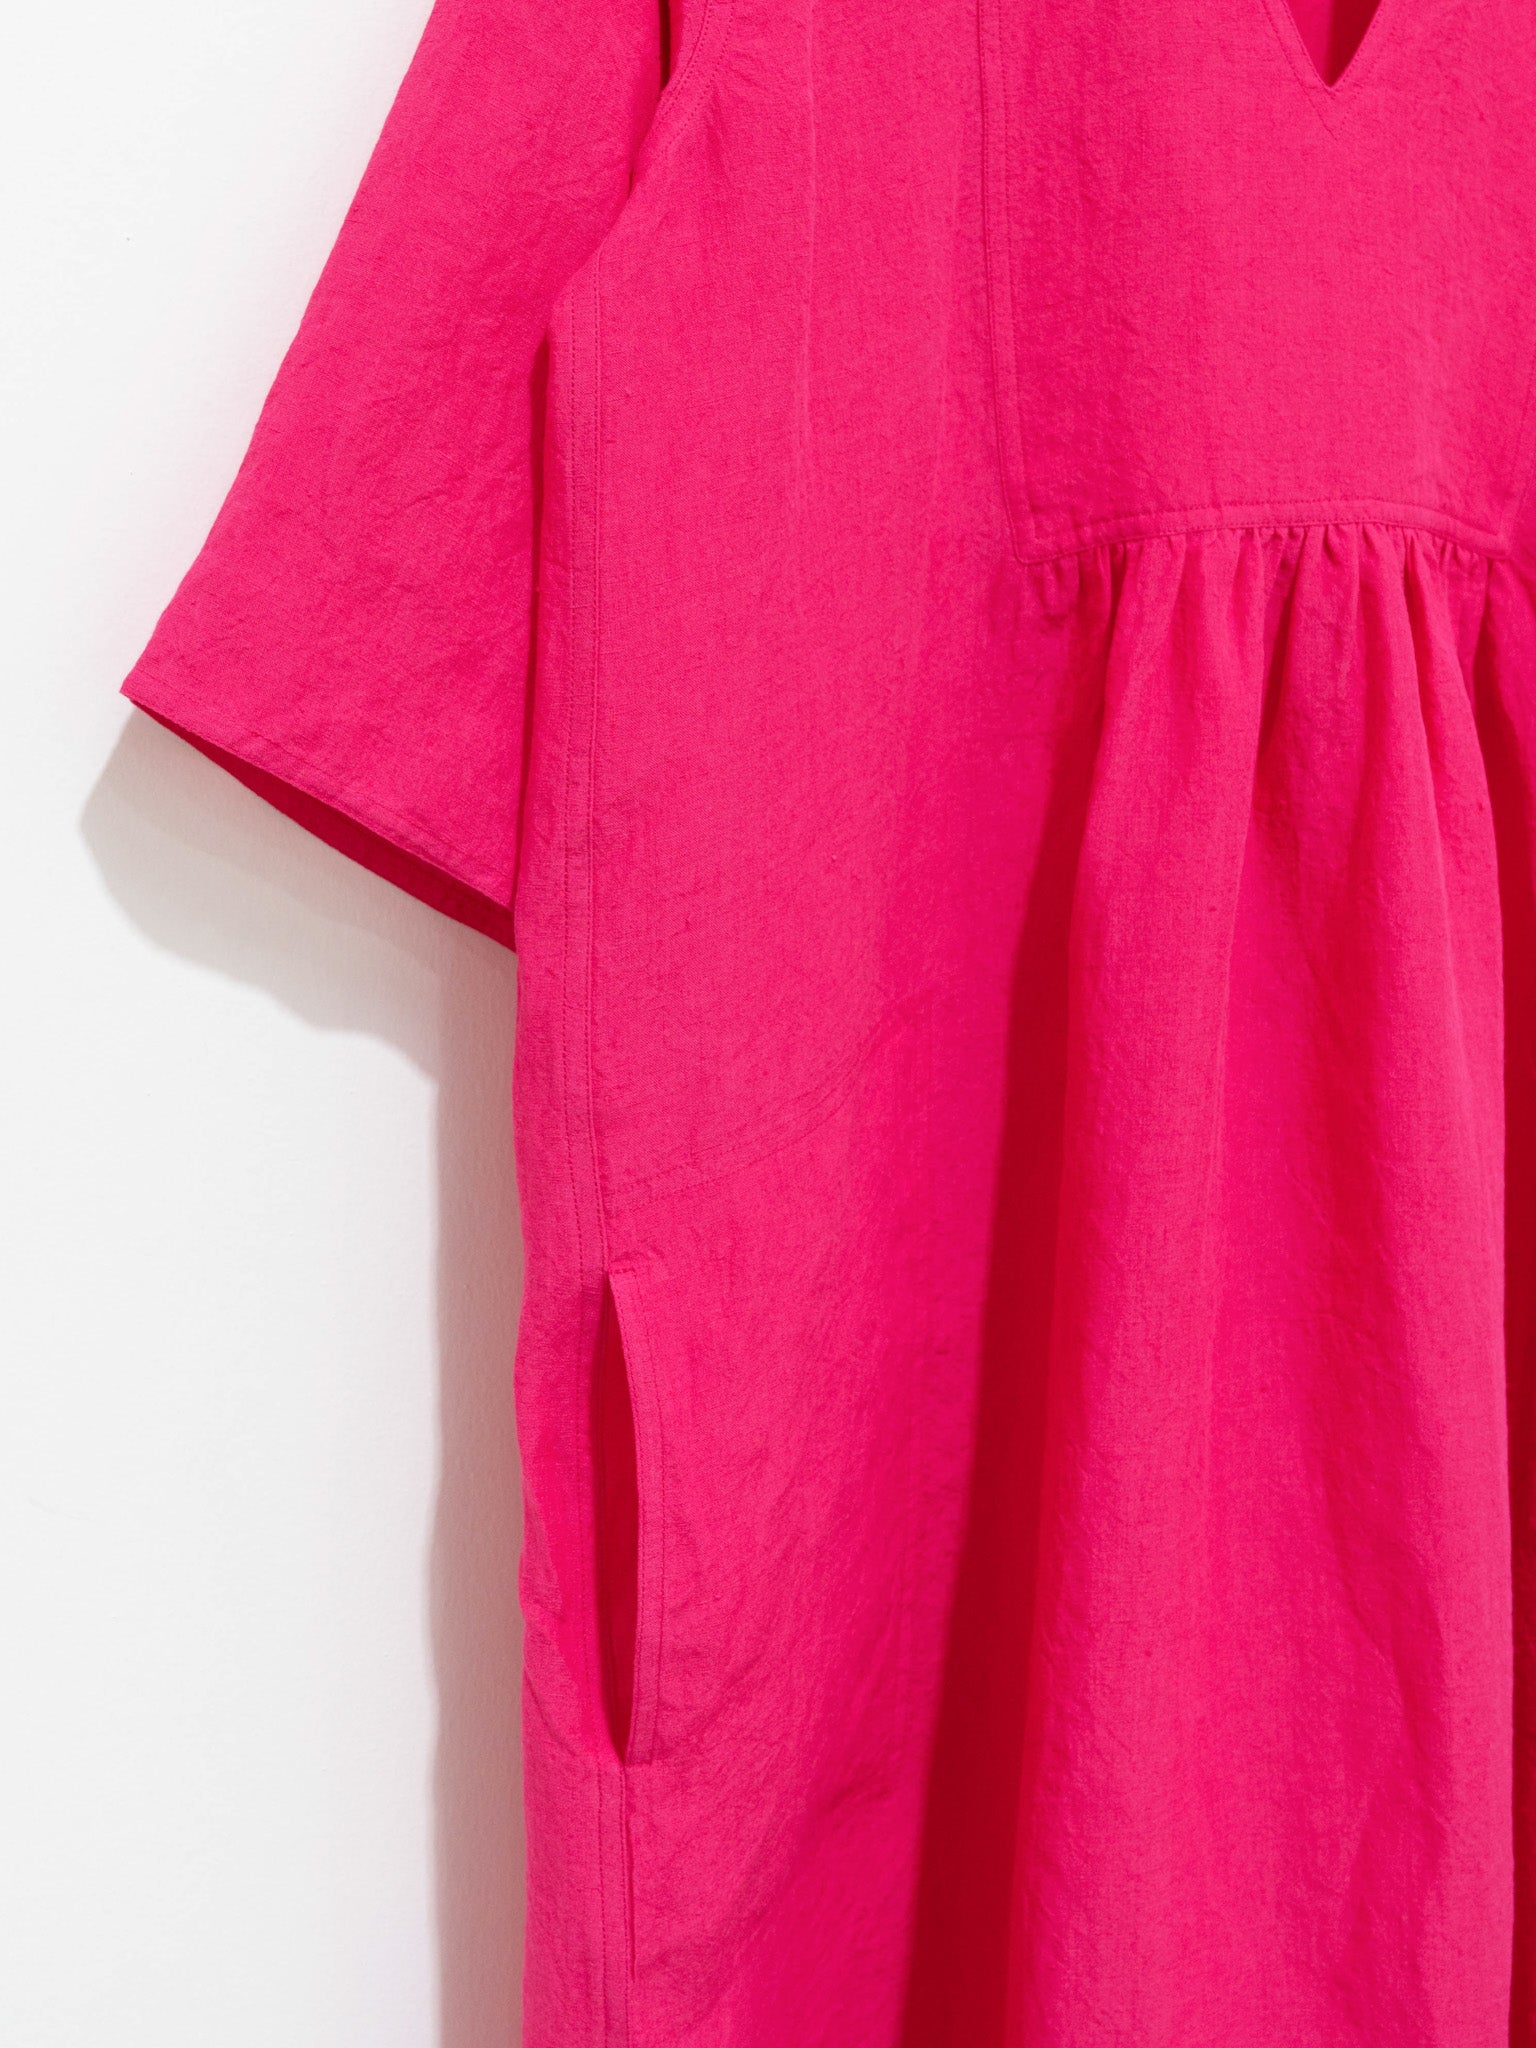 Namu Shop - Sofie D'Hoore Doralynn Linen Dress - Fuschia Pink